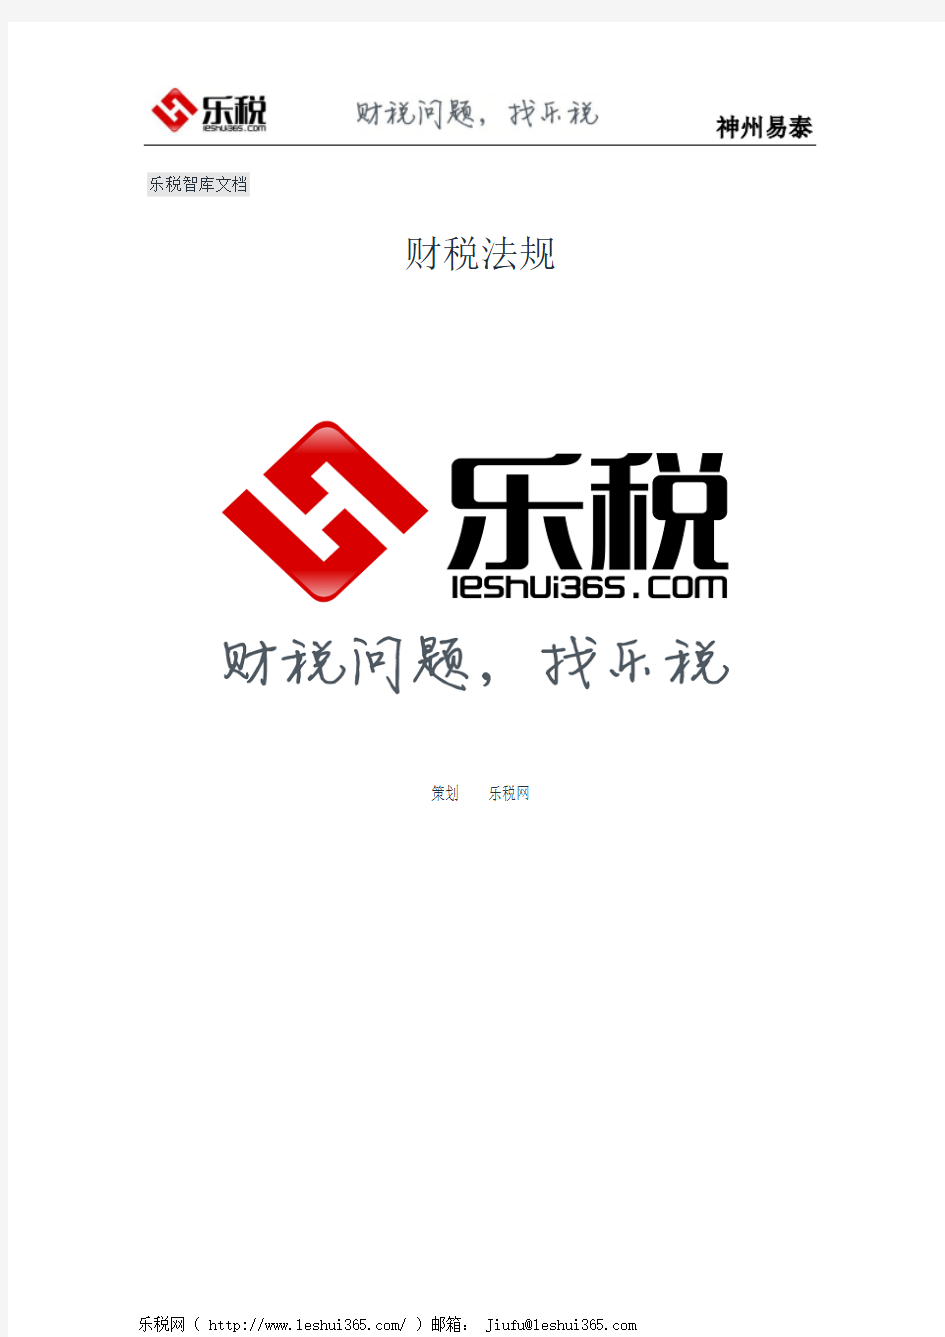 北京市地方税务局关于个人出租房屋税收征收管理工作的补充通知